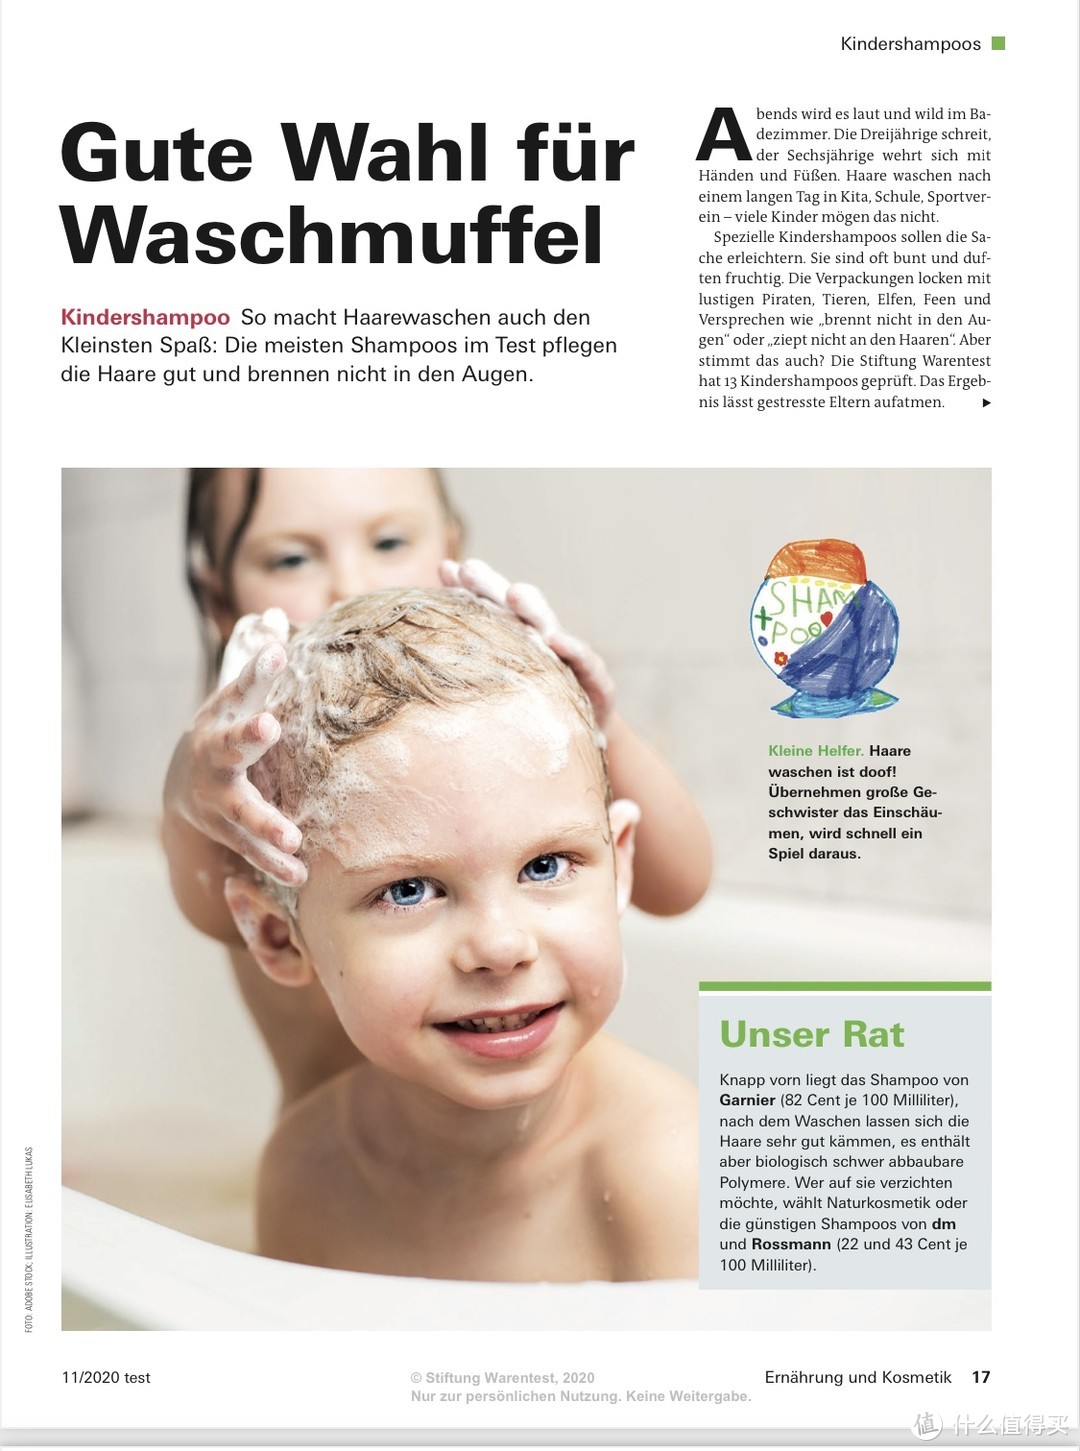 Warentest儿童洗发水测评报告